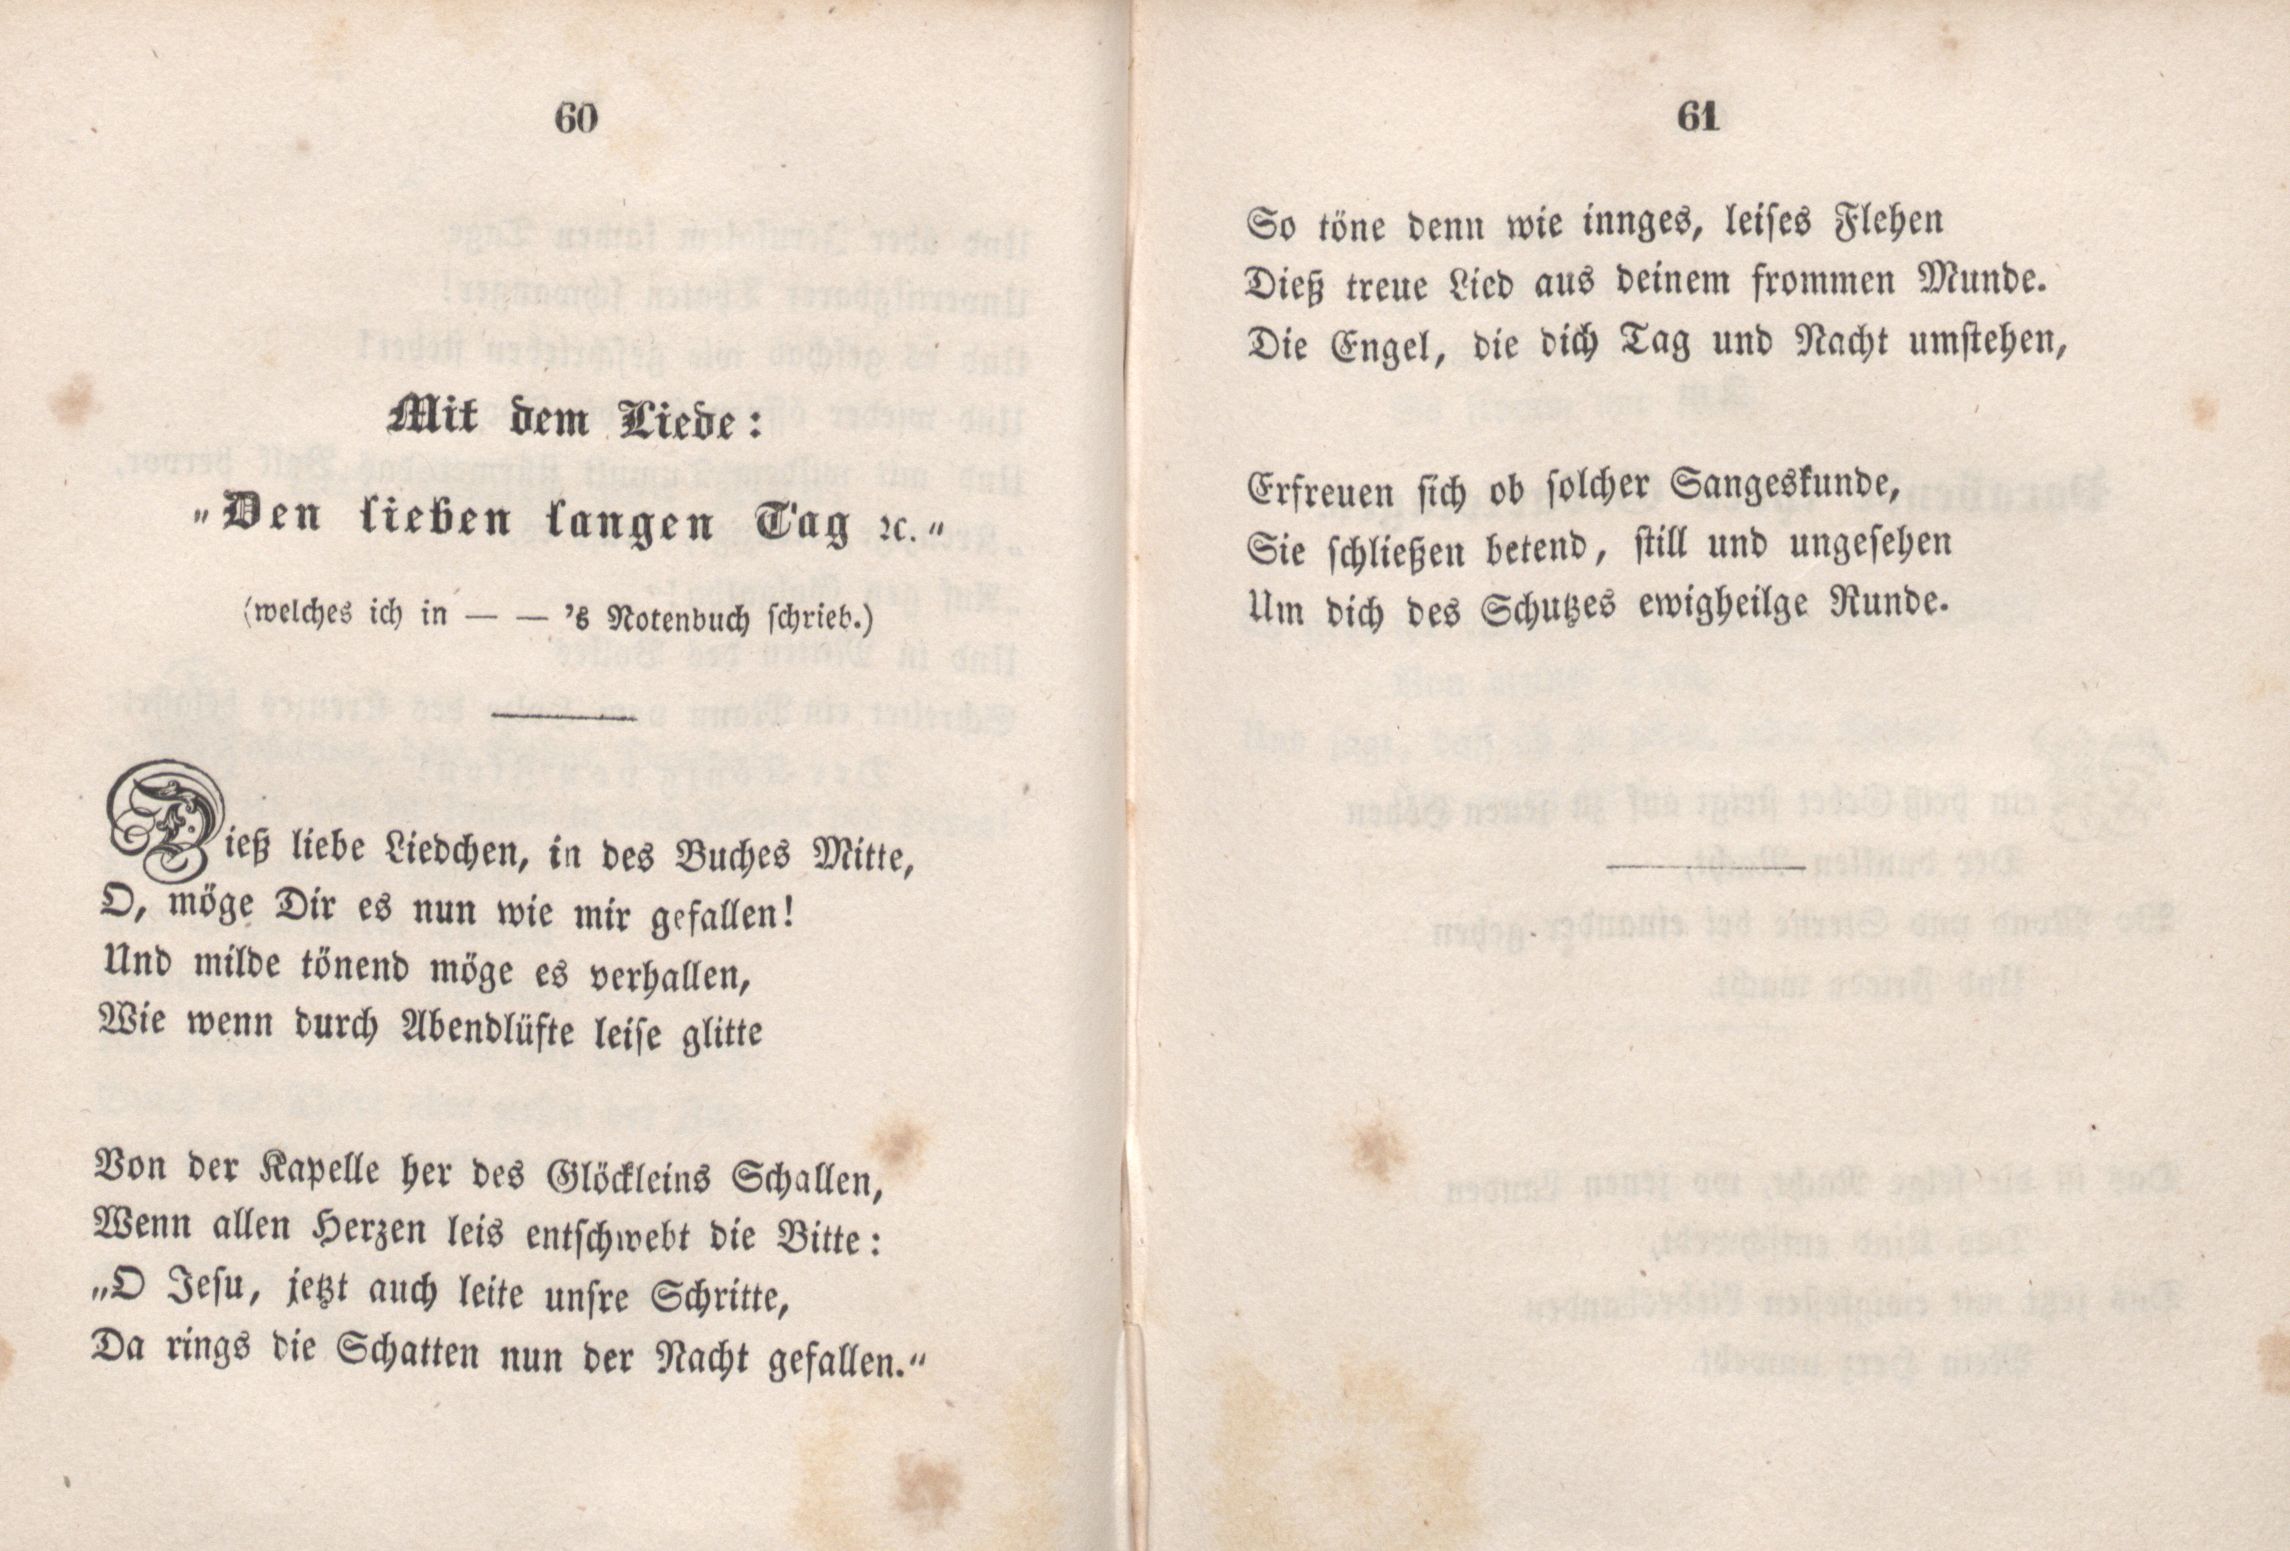 Mit dem Liede: "Den lieben langen Tag" (1846) | 1. (60-61) Main body of text